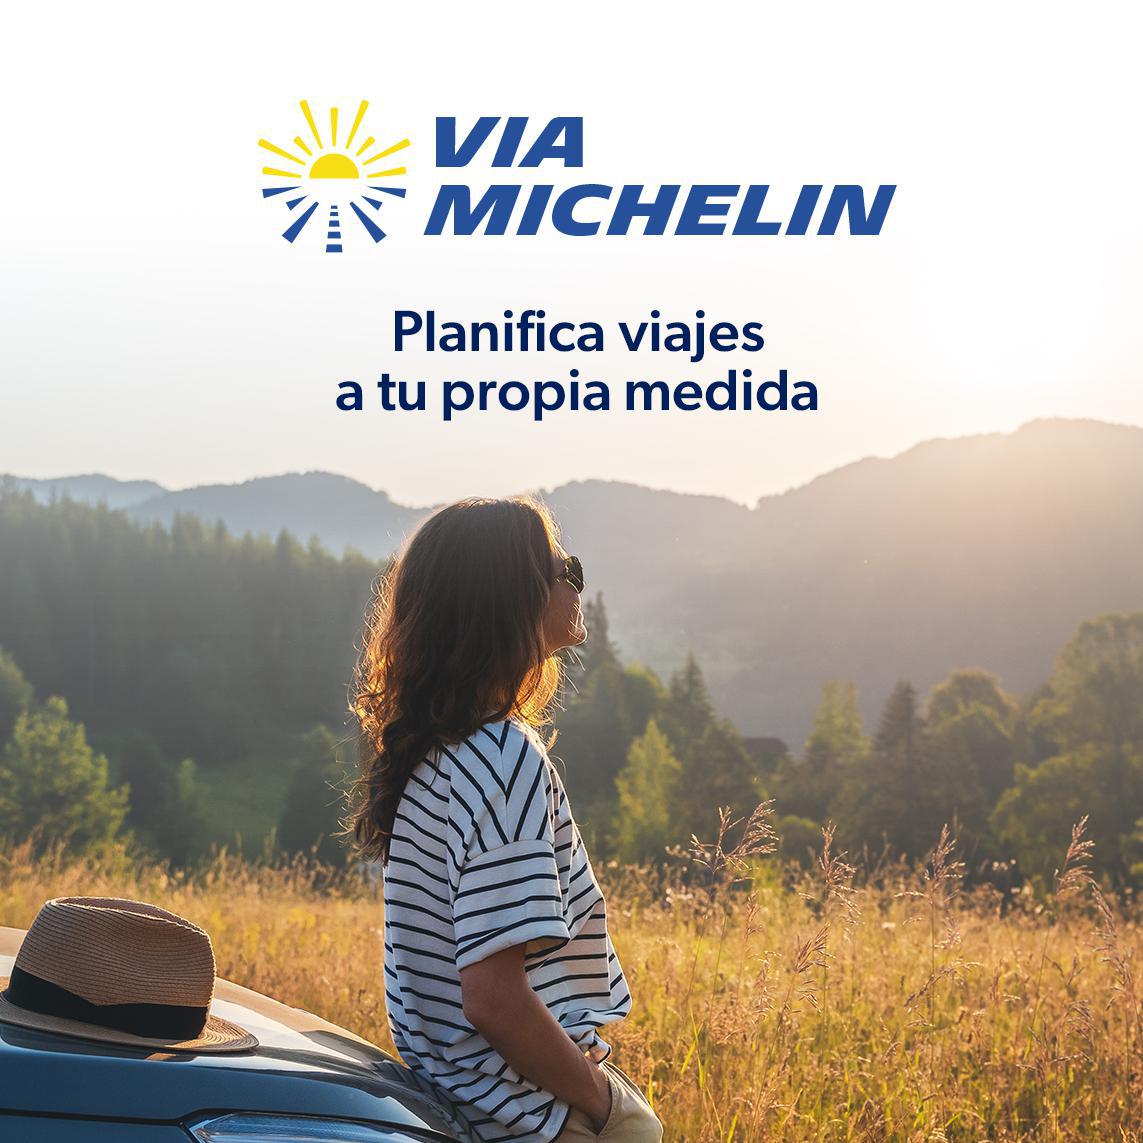 La nueva ViaMichelin: convertir rutas en viajes